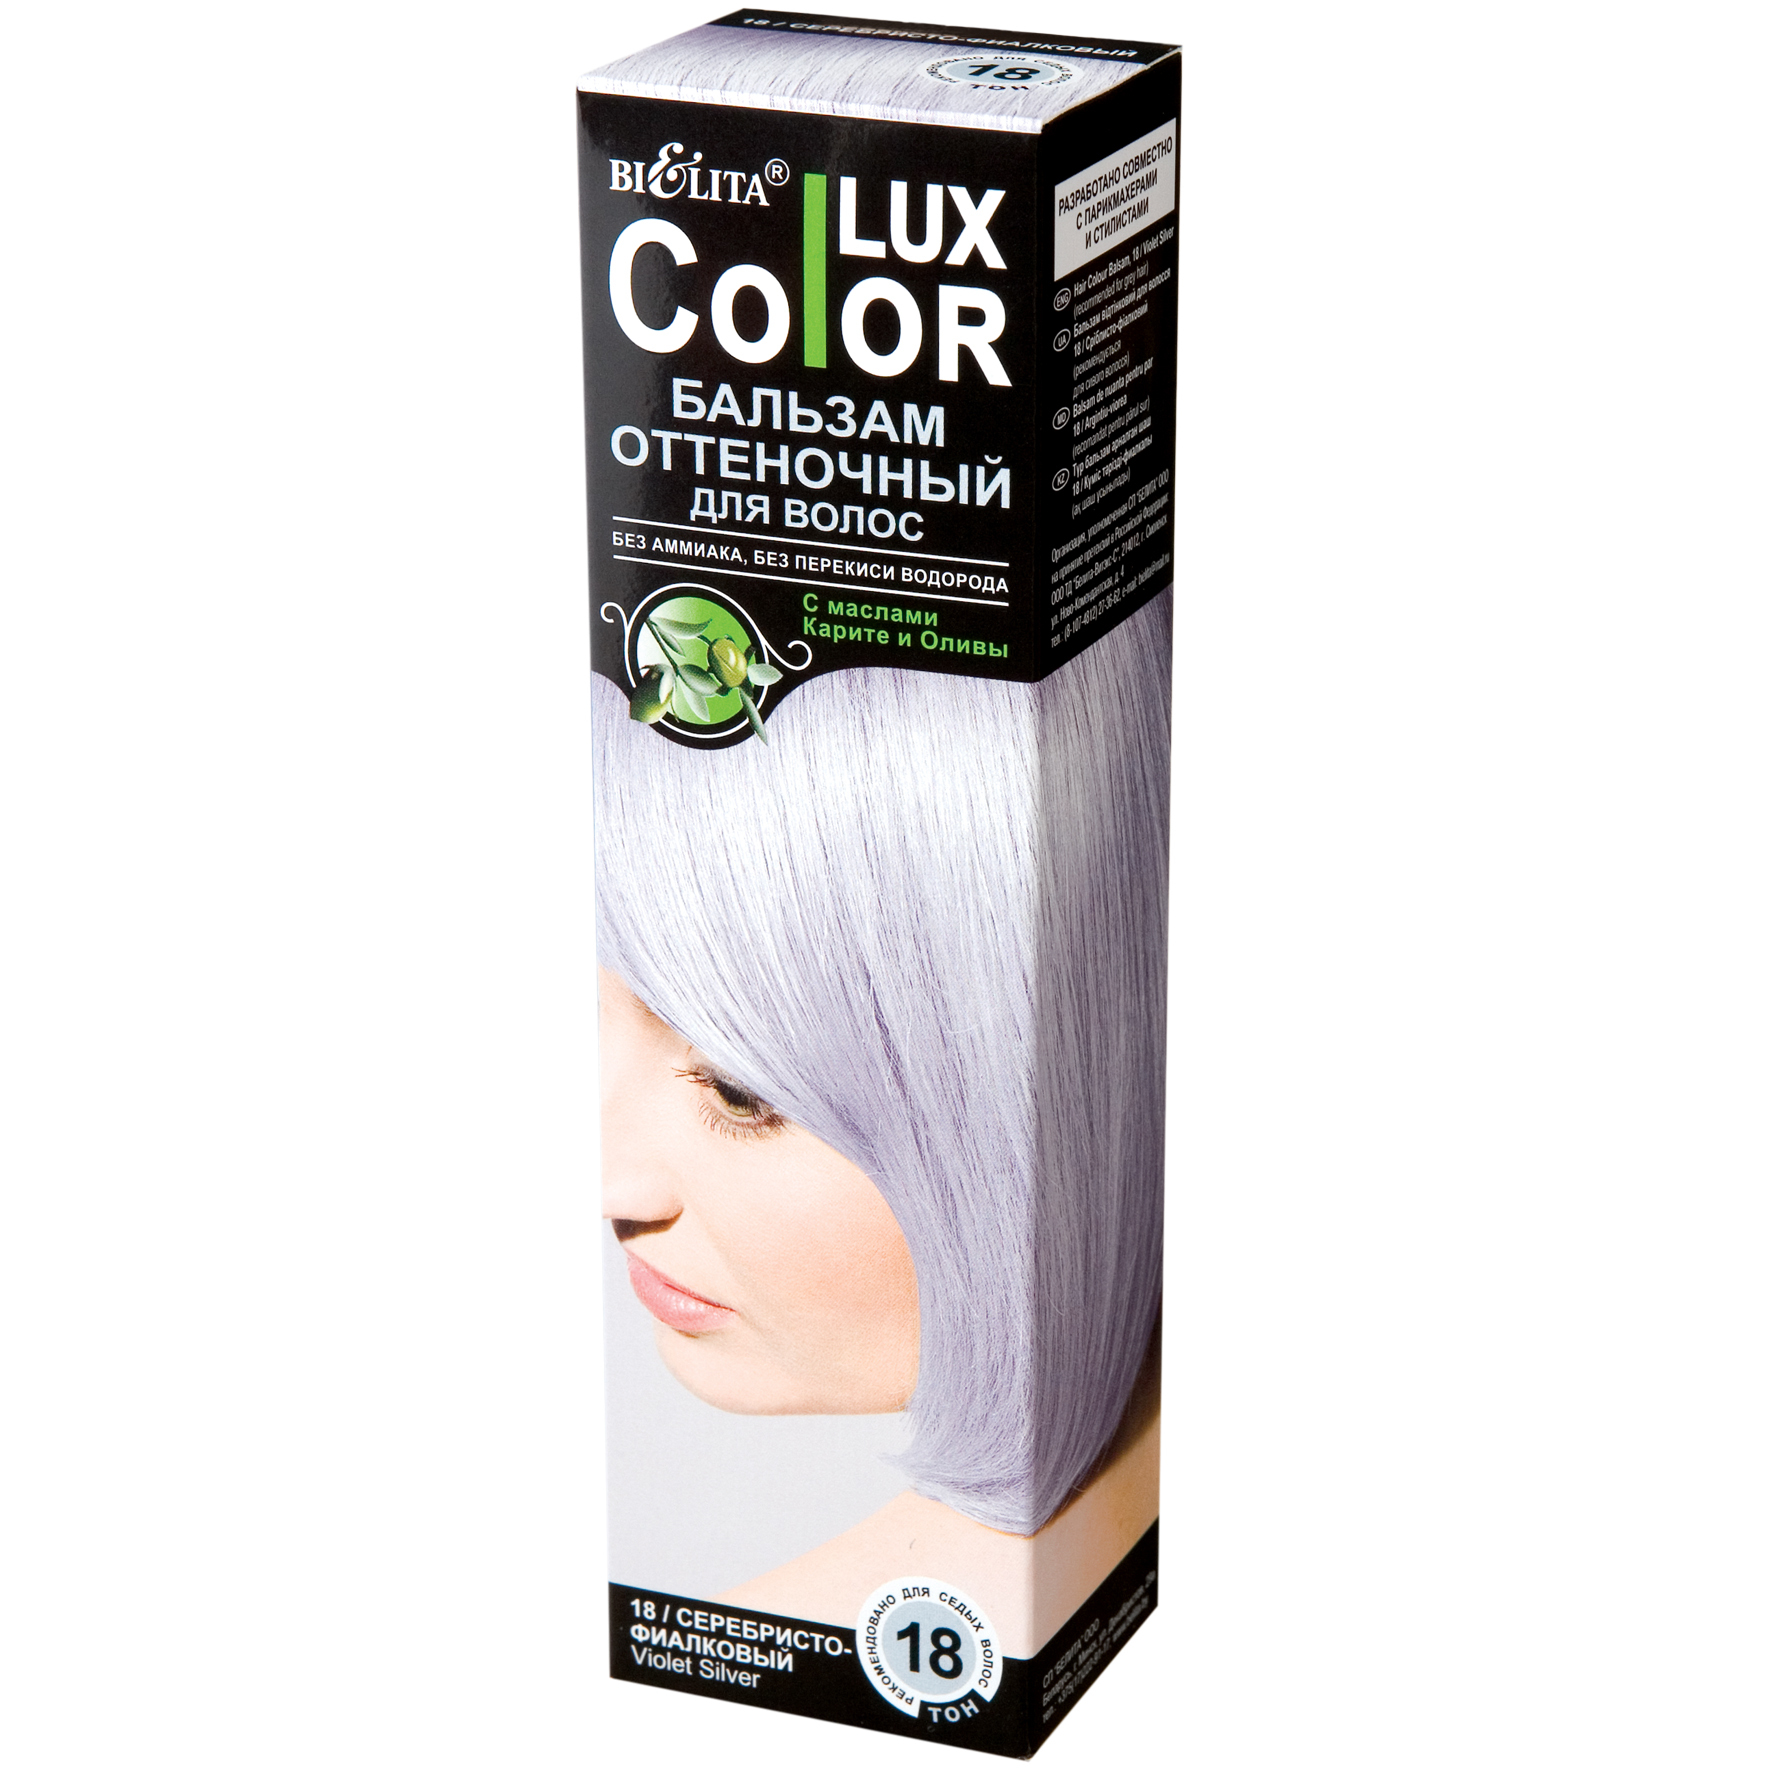 Оттеночный бальзам белита отзывы. Lux Color бальзам оттеночный Color Lux 18. Белита колор Люкс оттеночный бальзам. Оттеночный бальзам для волос "Color Lux" тон: 19 серебристый 100 мл. Bielita Color Lux бальзам оттеночный.